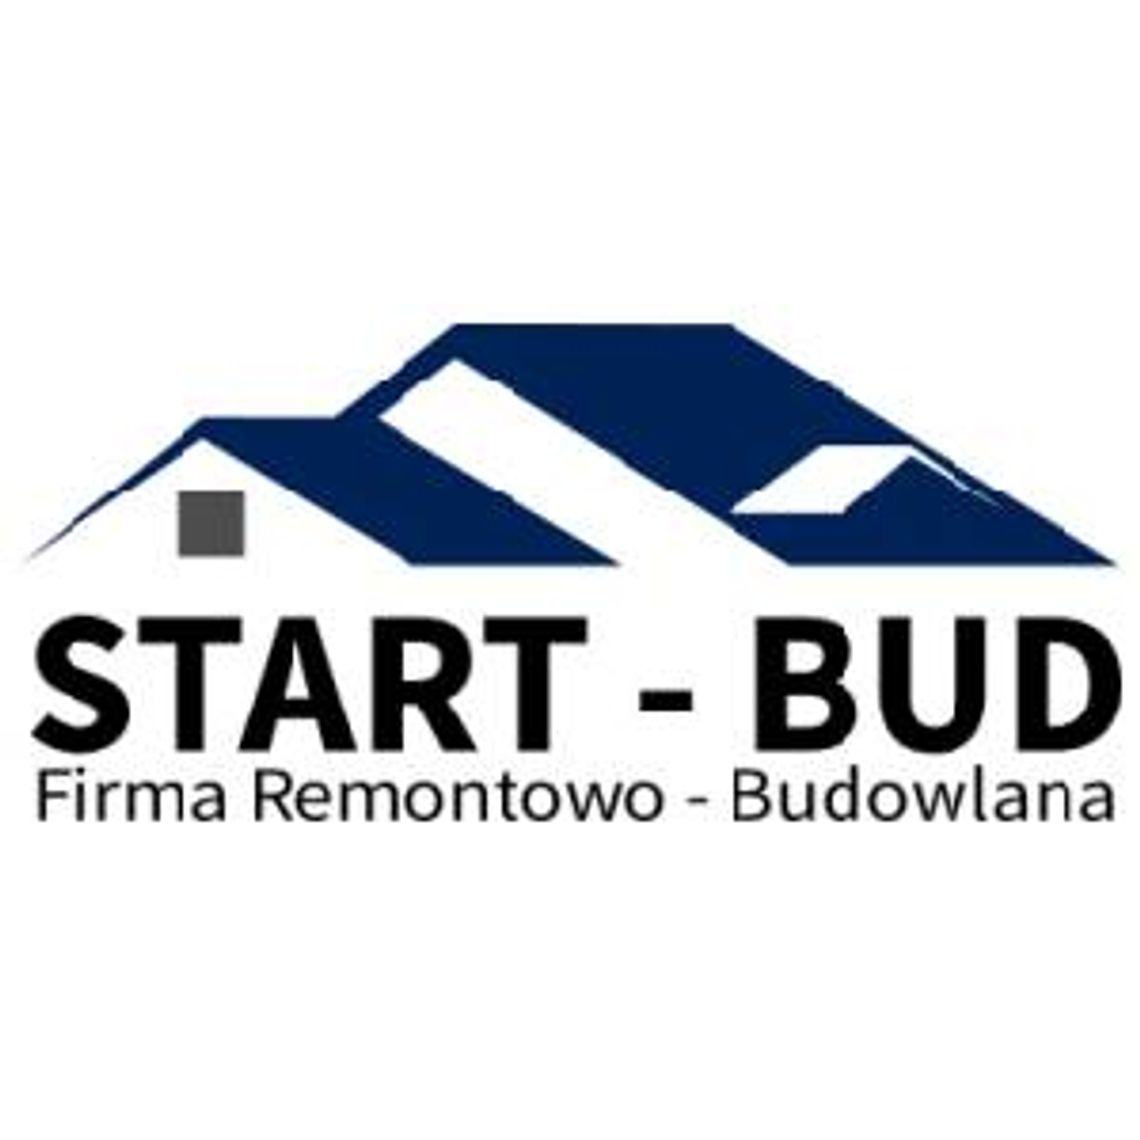 Firma remontowo budowlana Kraków - START-BUD